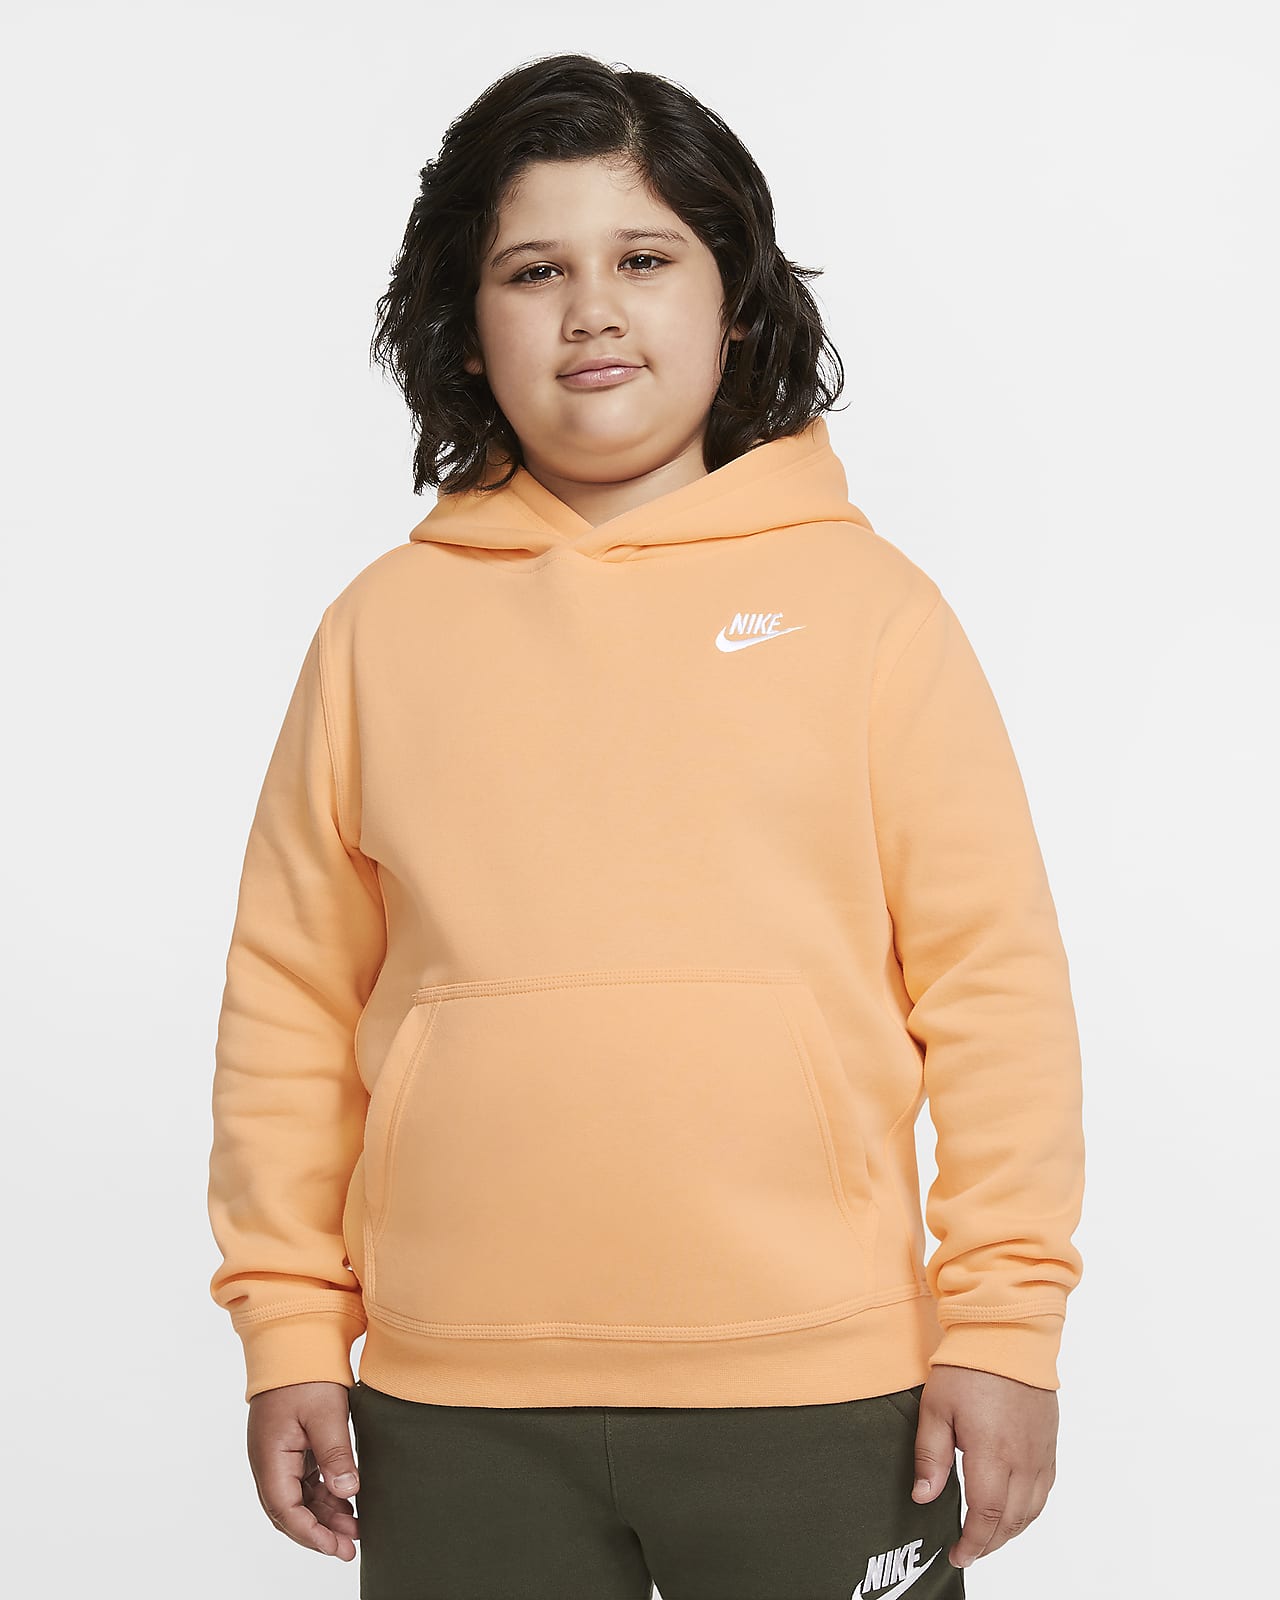 nike pullover hoodie orange